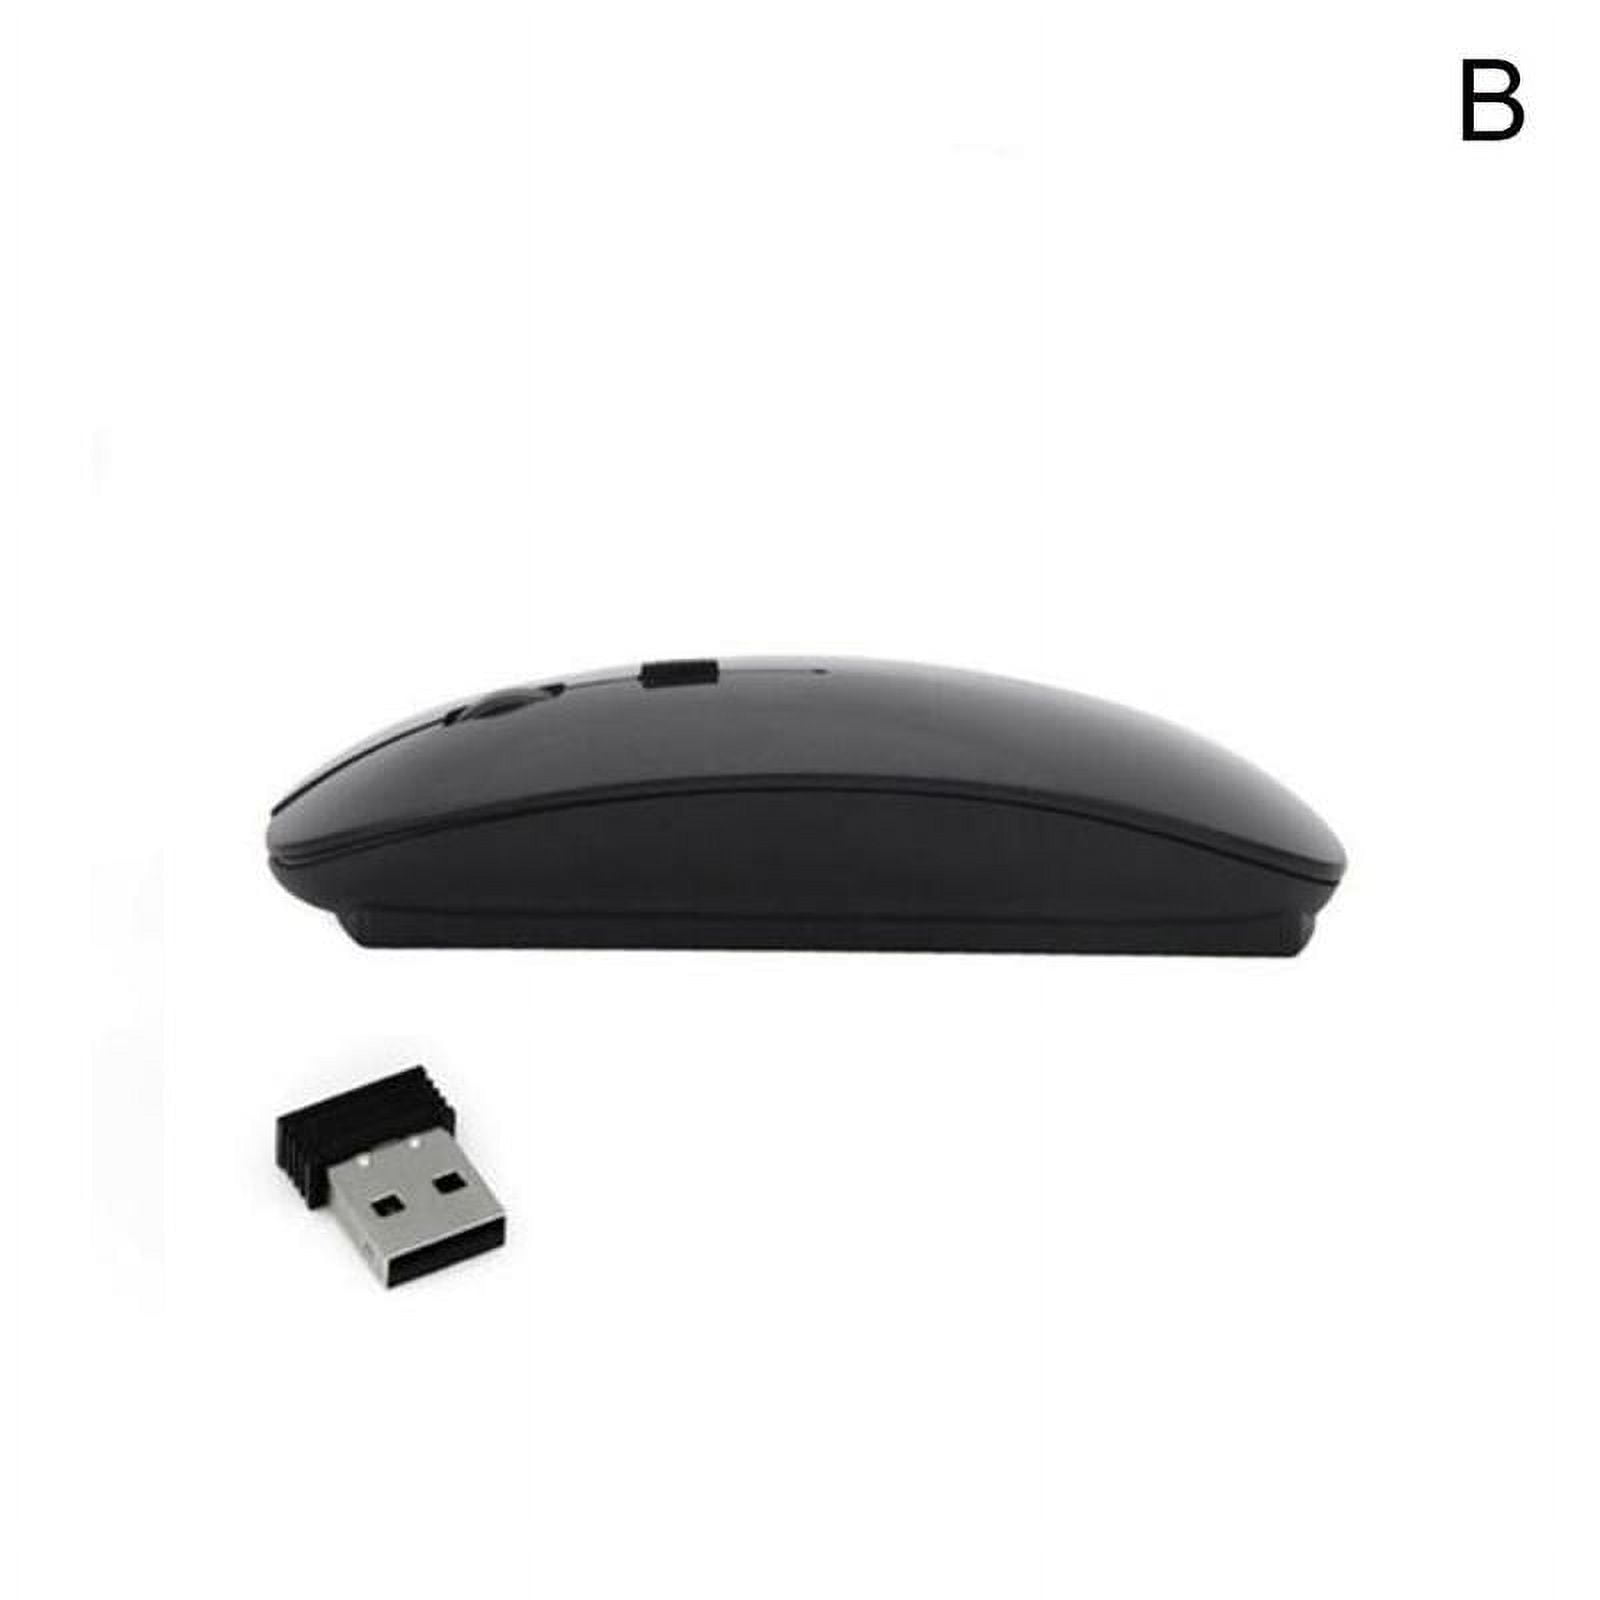 2.4G souris sans fil USB souris optique Portable Ultra mince sans